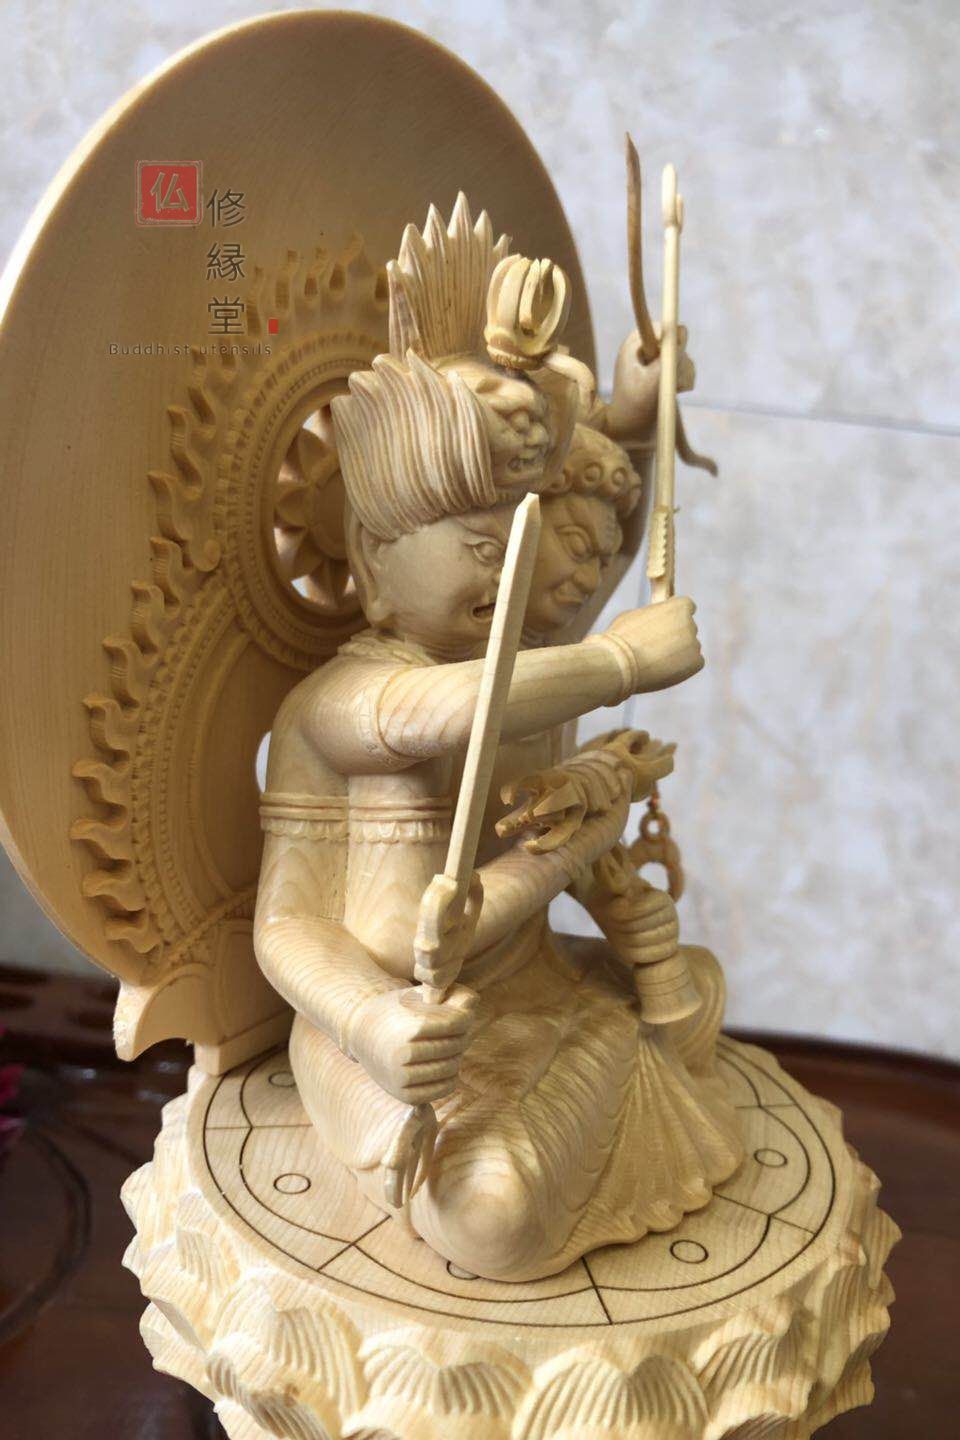 【修縁堂】最高級 木彫仏像 双頭愛染明王座像 一刀彫 天然木檜材 彫刻 仏教工芸彫刻